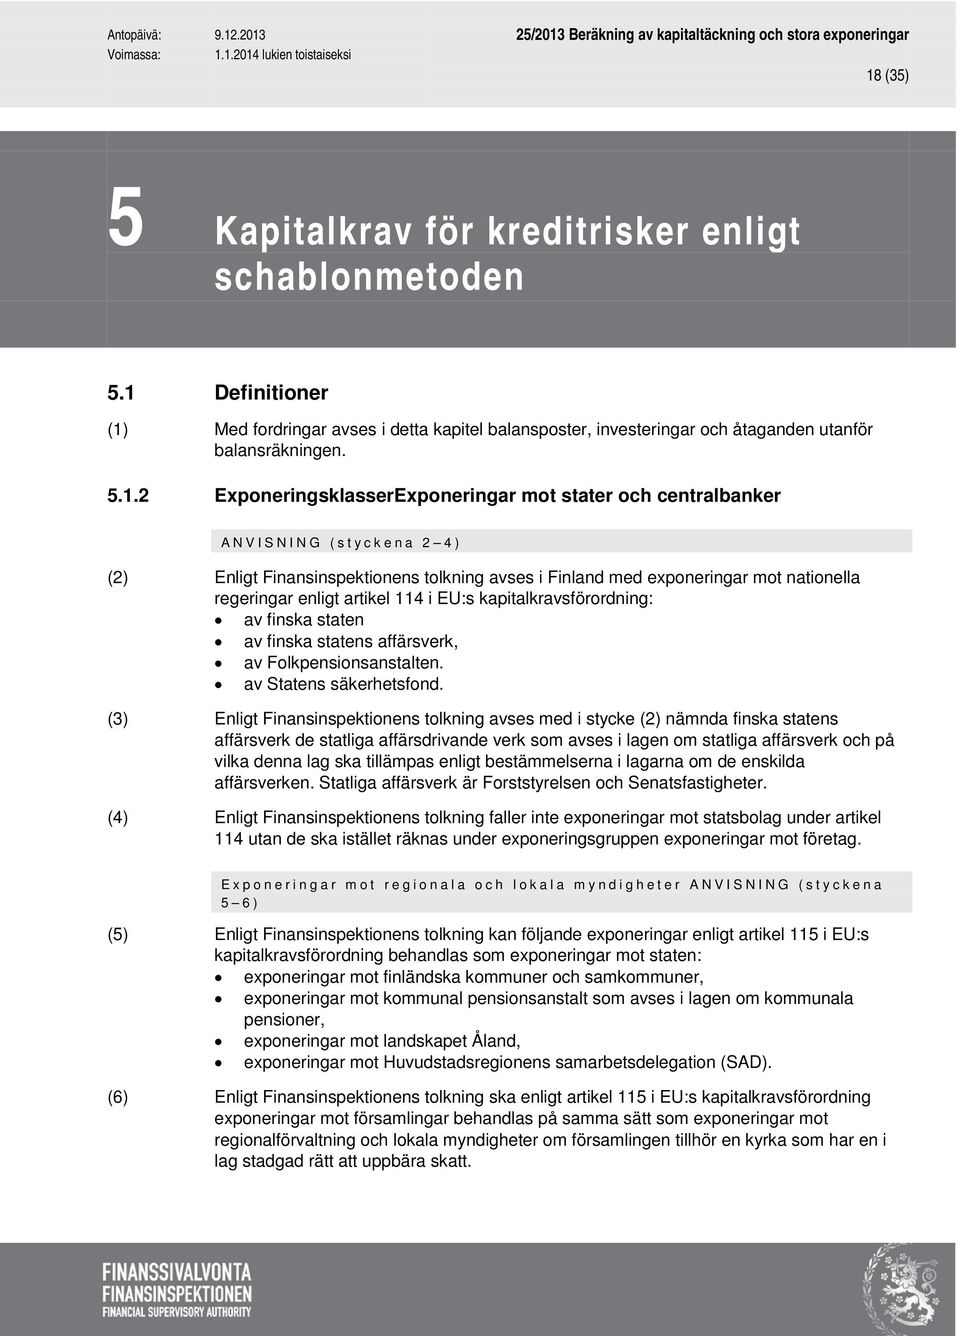 114 i EU:s kapitalkravsförordning: av finska staten av finska statens affärsverk, av Folkpensionsanstalten. av Statens säkerhetsfond.